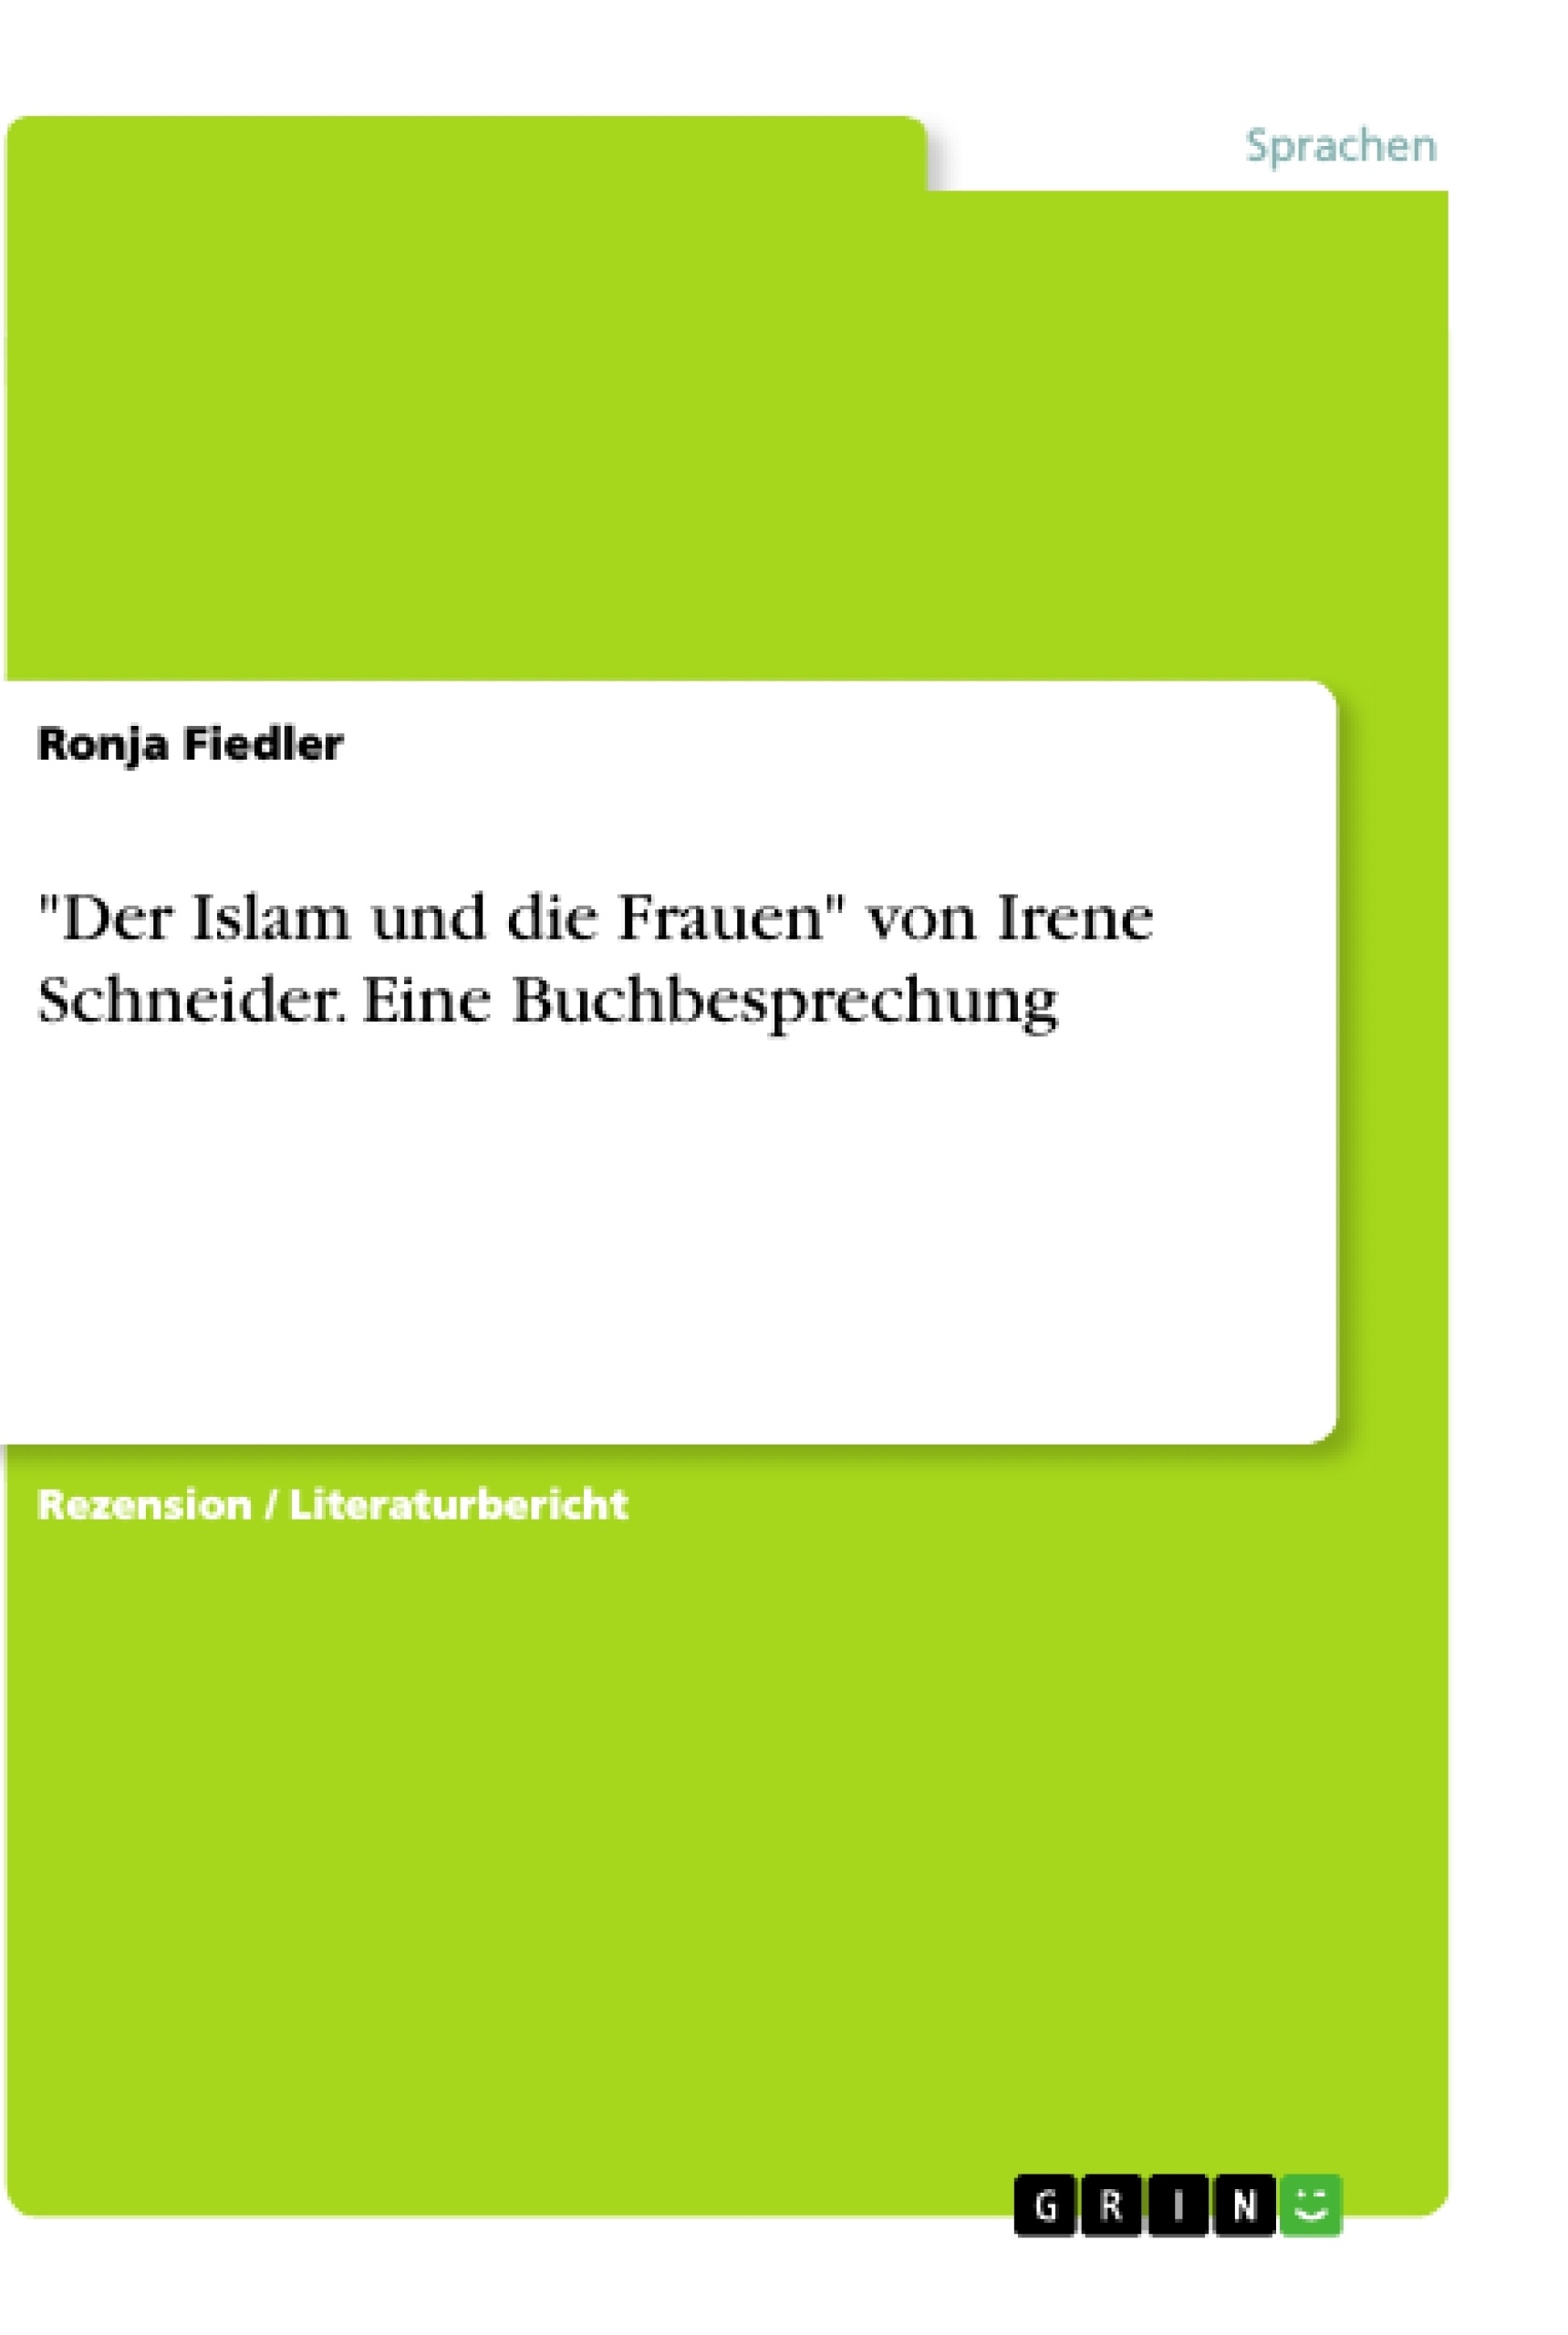 Title: "Der Islam und die Frauen" von Irene Schneider. Eine Buchbesprechung